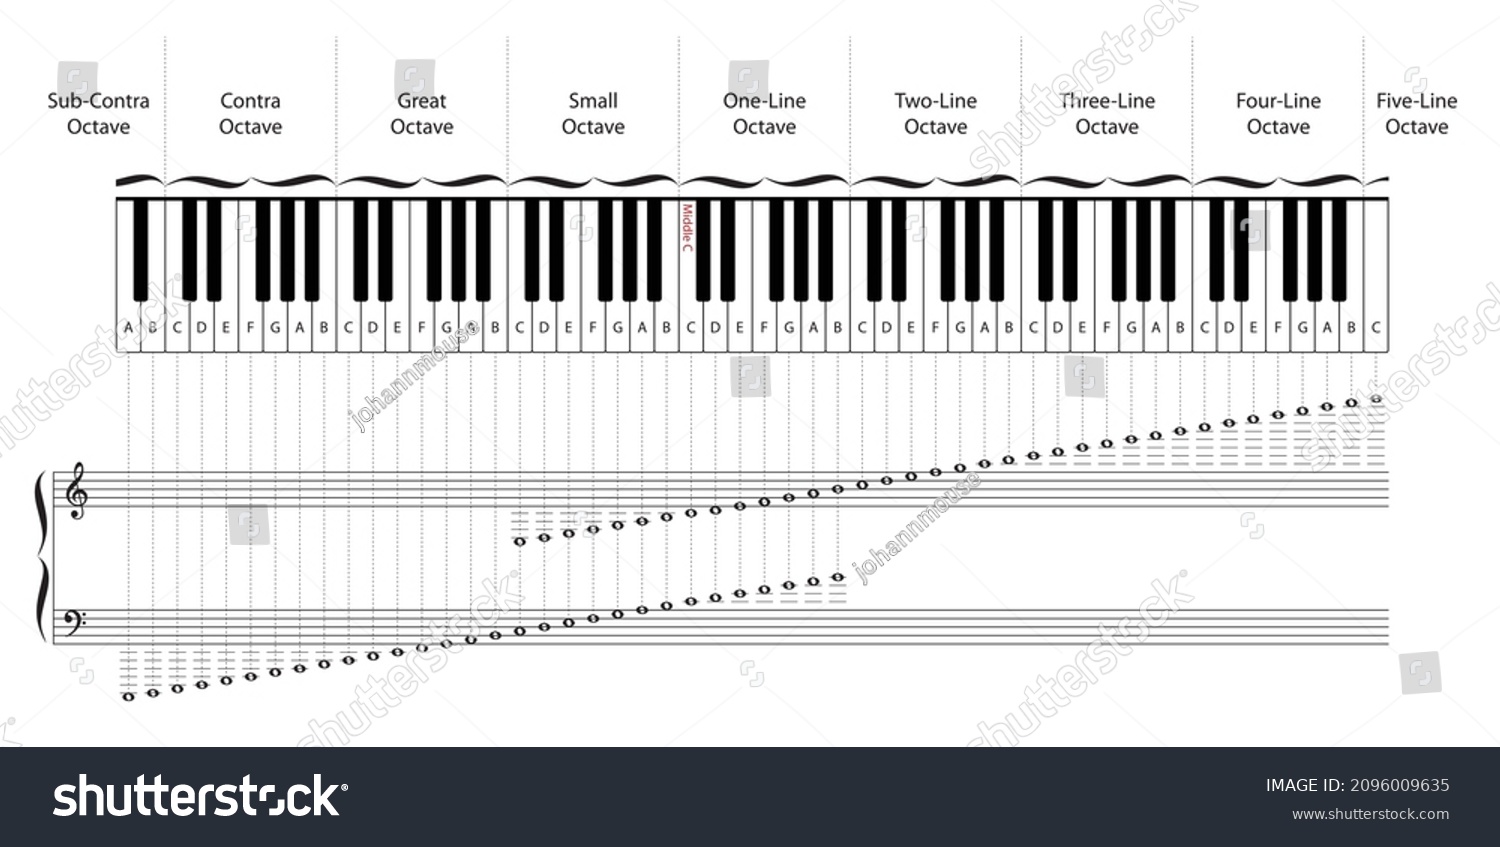 Сколько октав берет. Piano Keyboard with Notes and Octaves. Октава на пианино руки. Частоты музыкальных инструментов таблица по октавам.